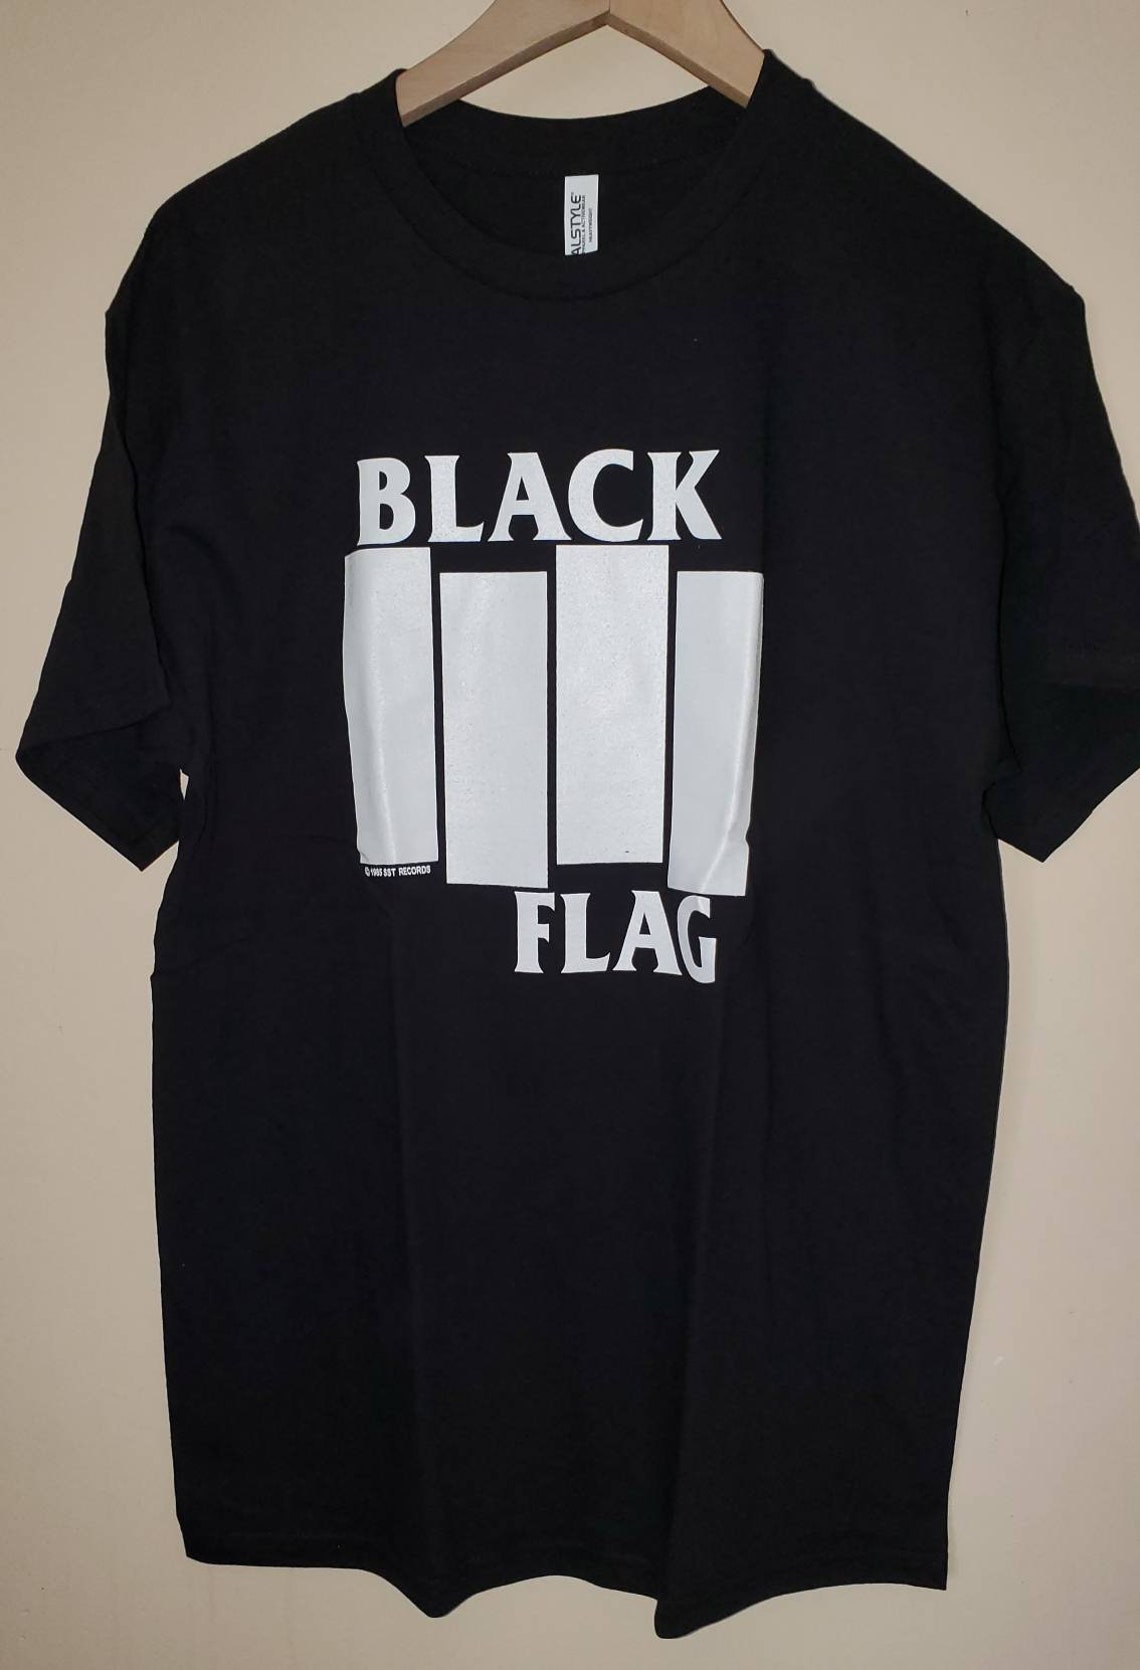 Black Flag Vintage Tee | Etsy